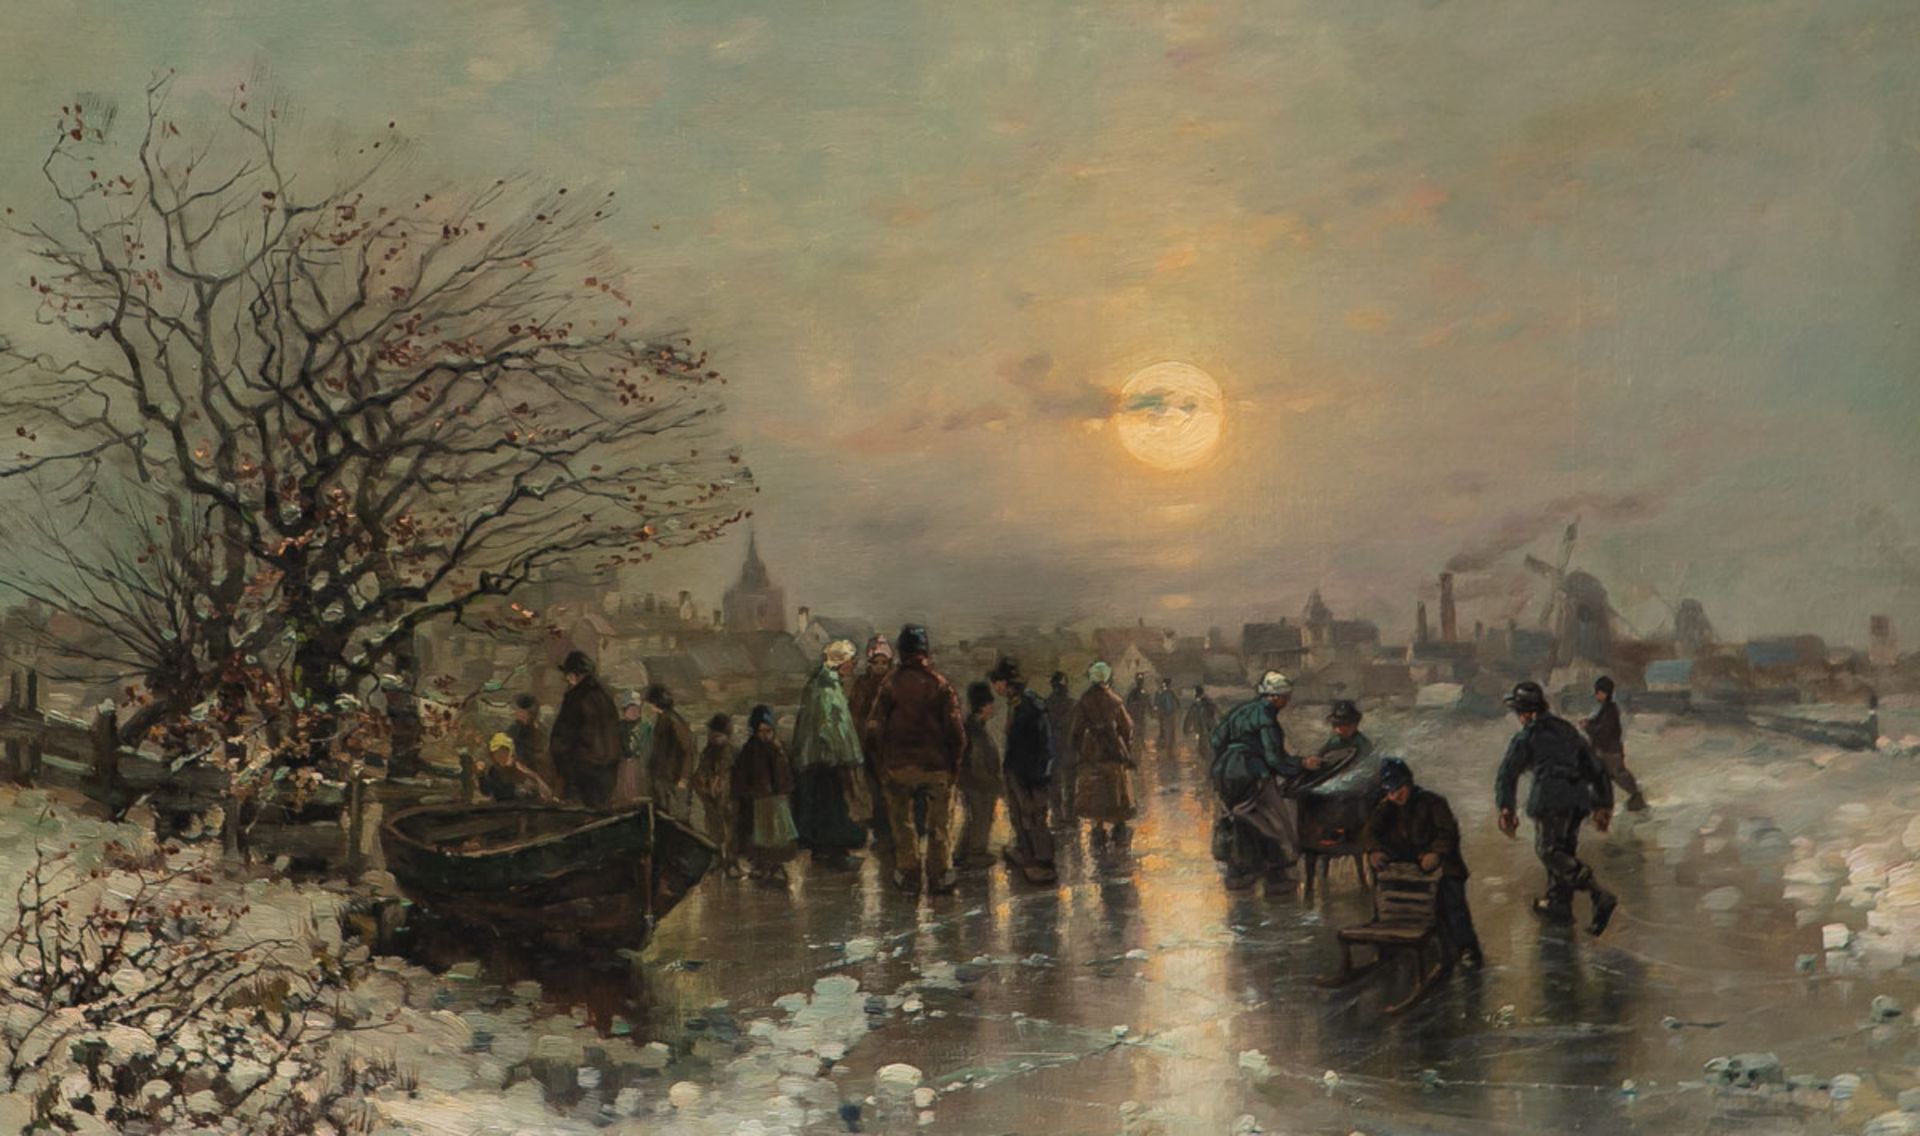 Thomassin, Desire (1858 - 1933), "Abendliche Szene auf dem Eis" - Image 2 of 2